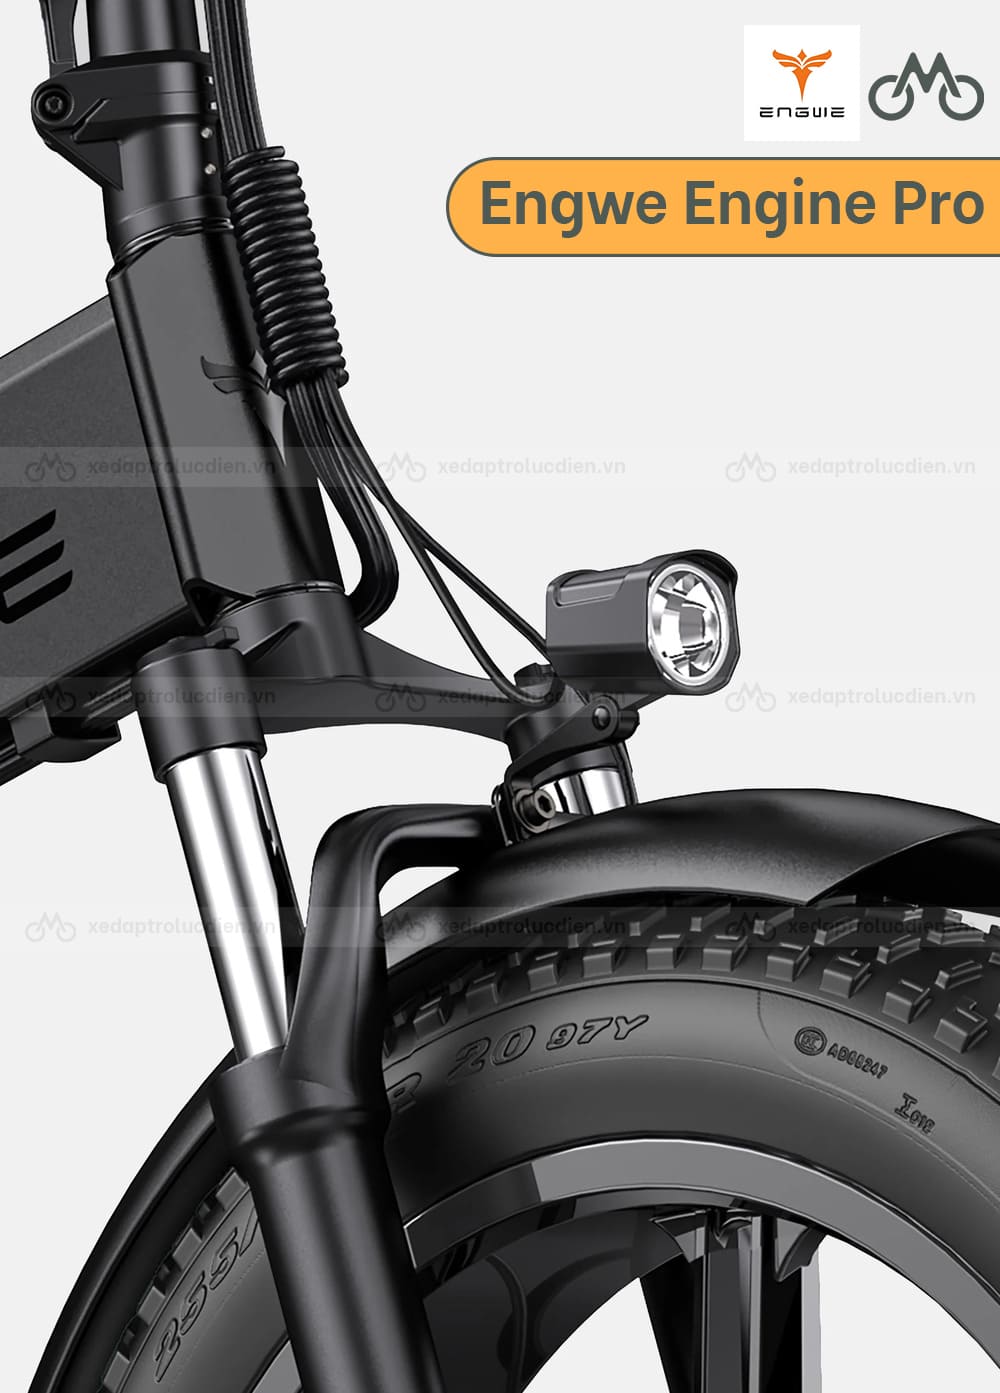 Đèn xe đạp điện Engwe Engine Pro